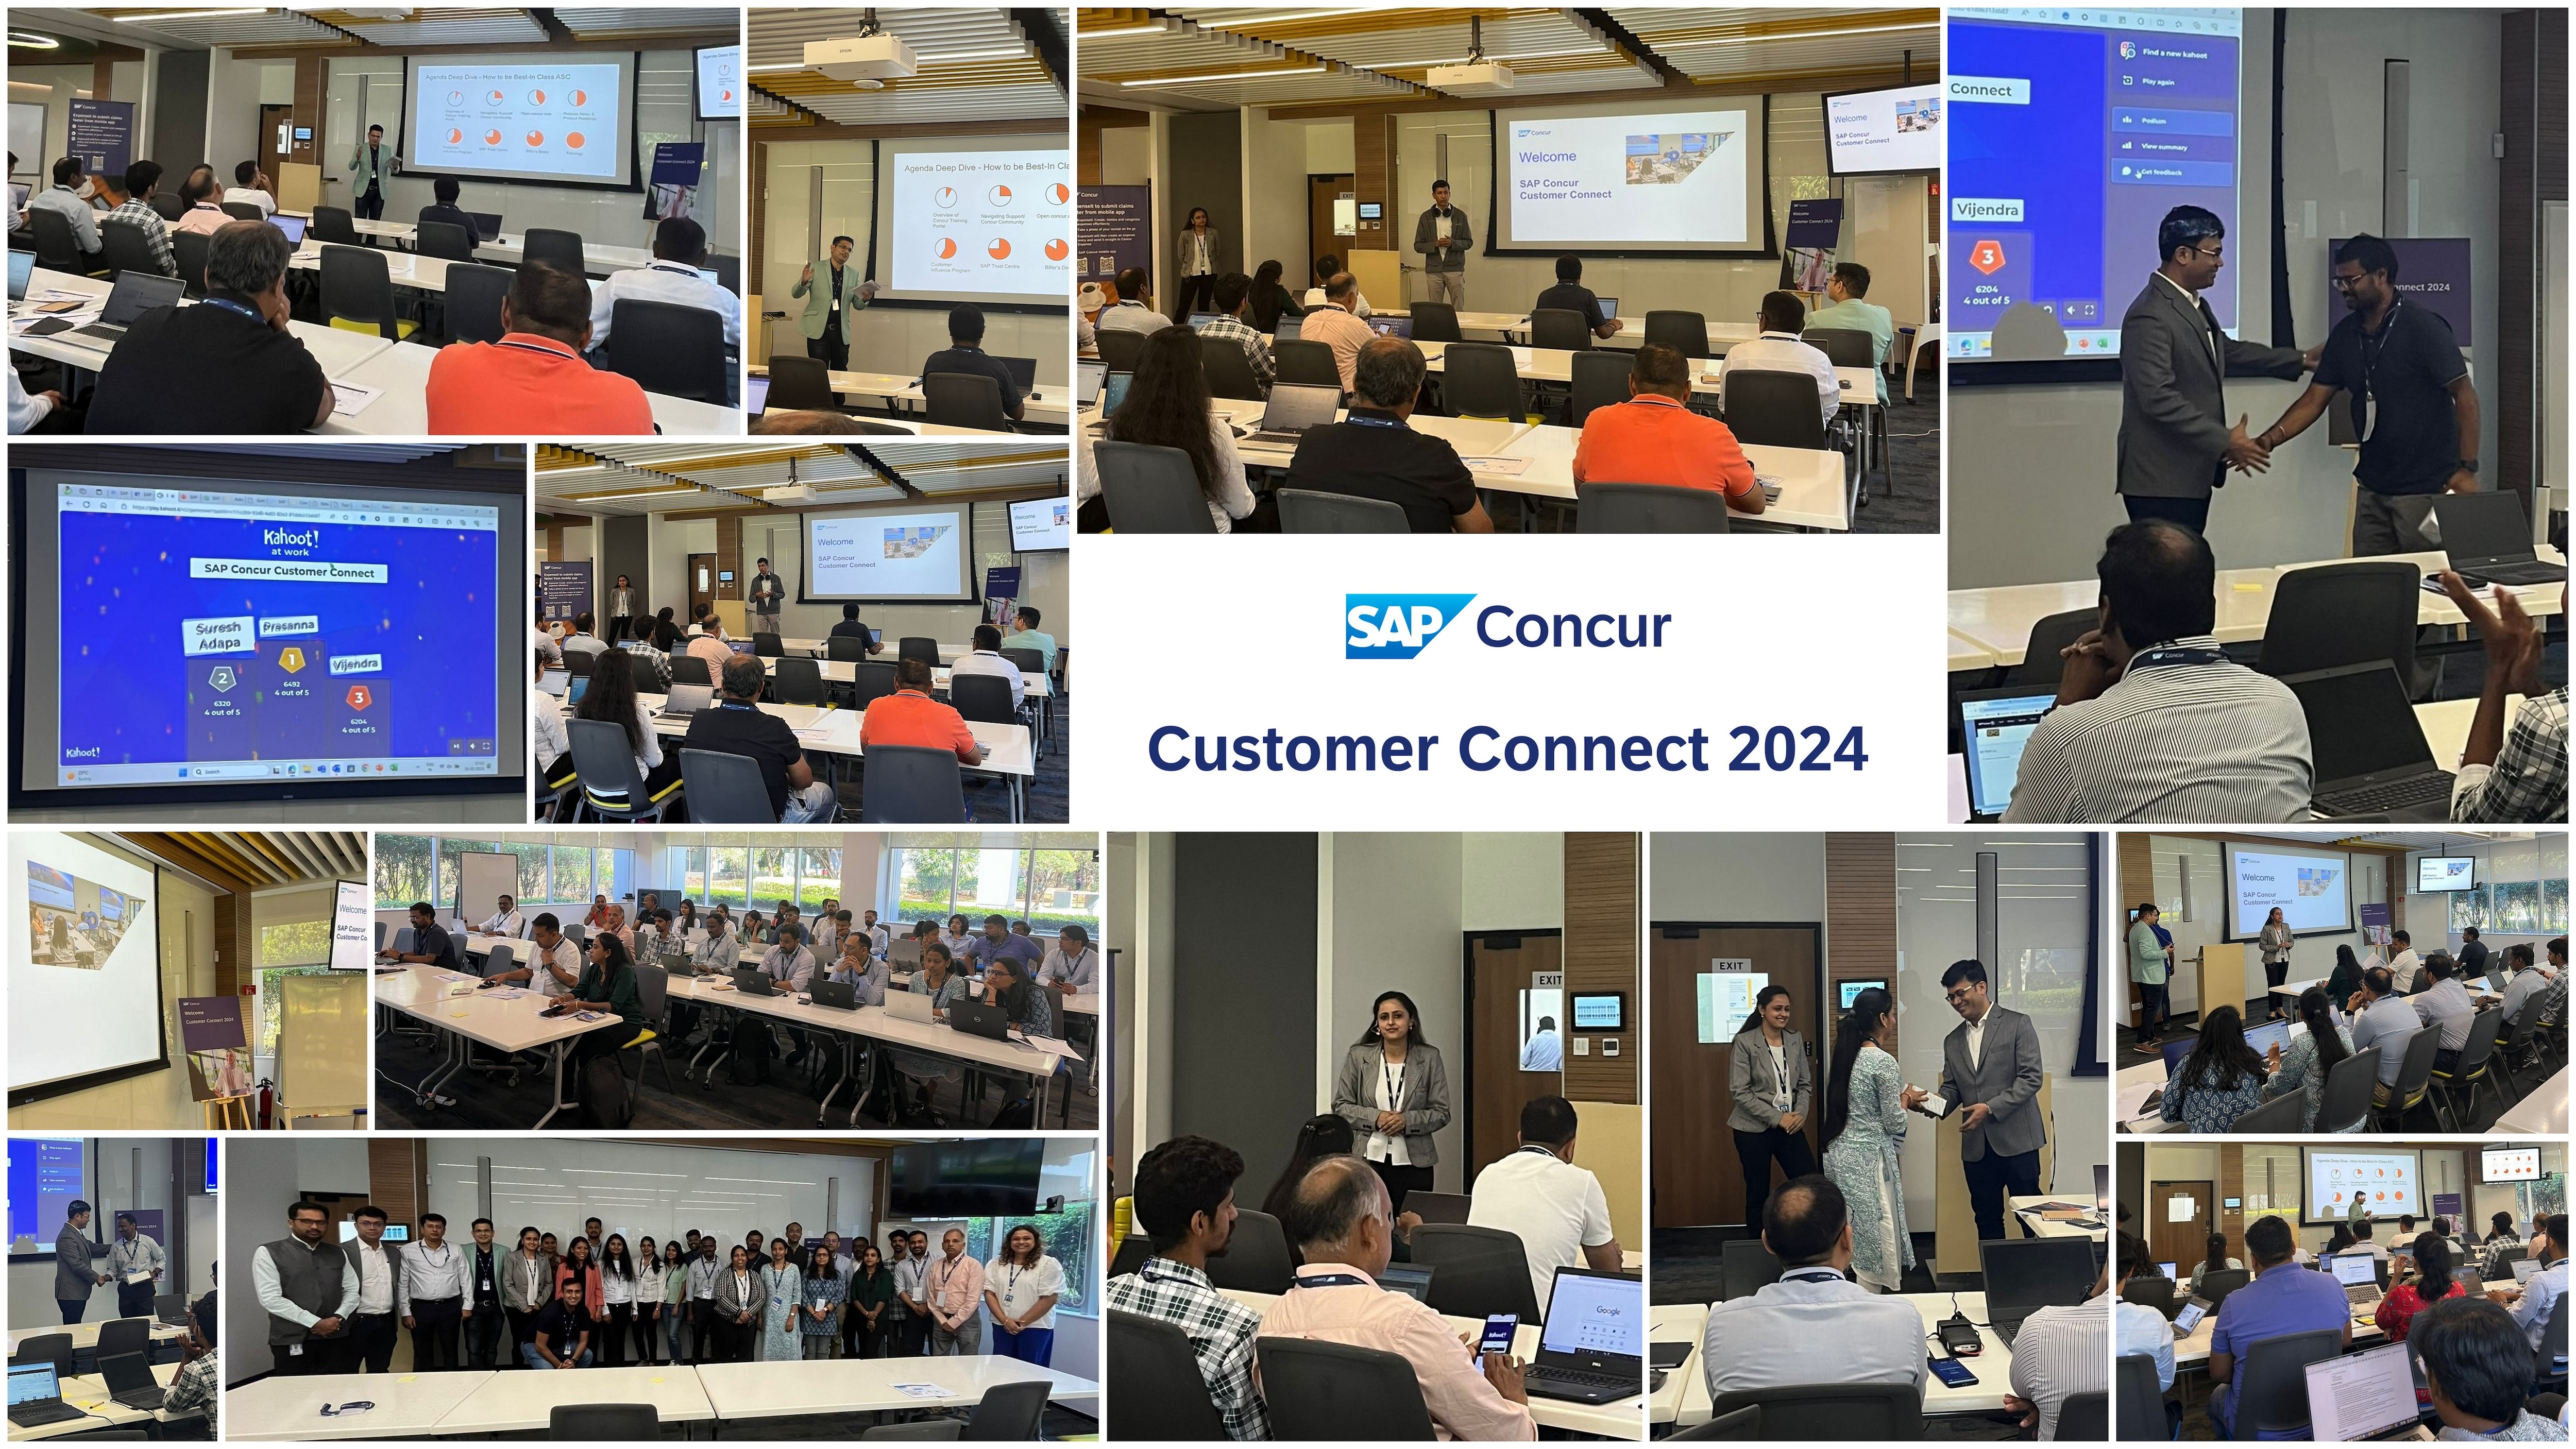 SAP Concur Customer Connect Bangalore 